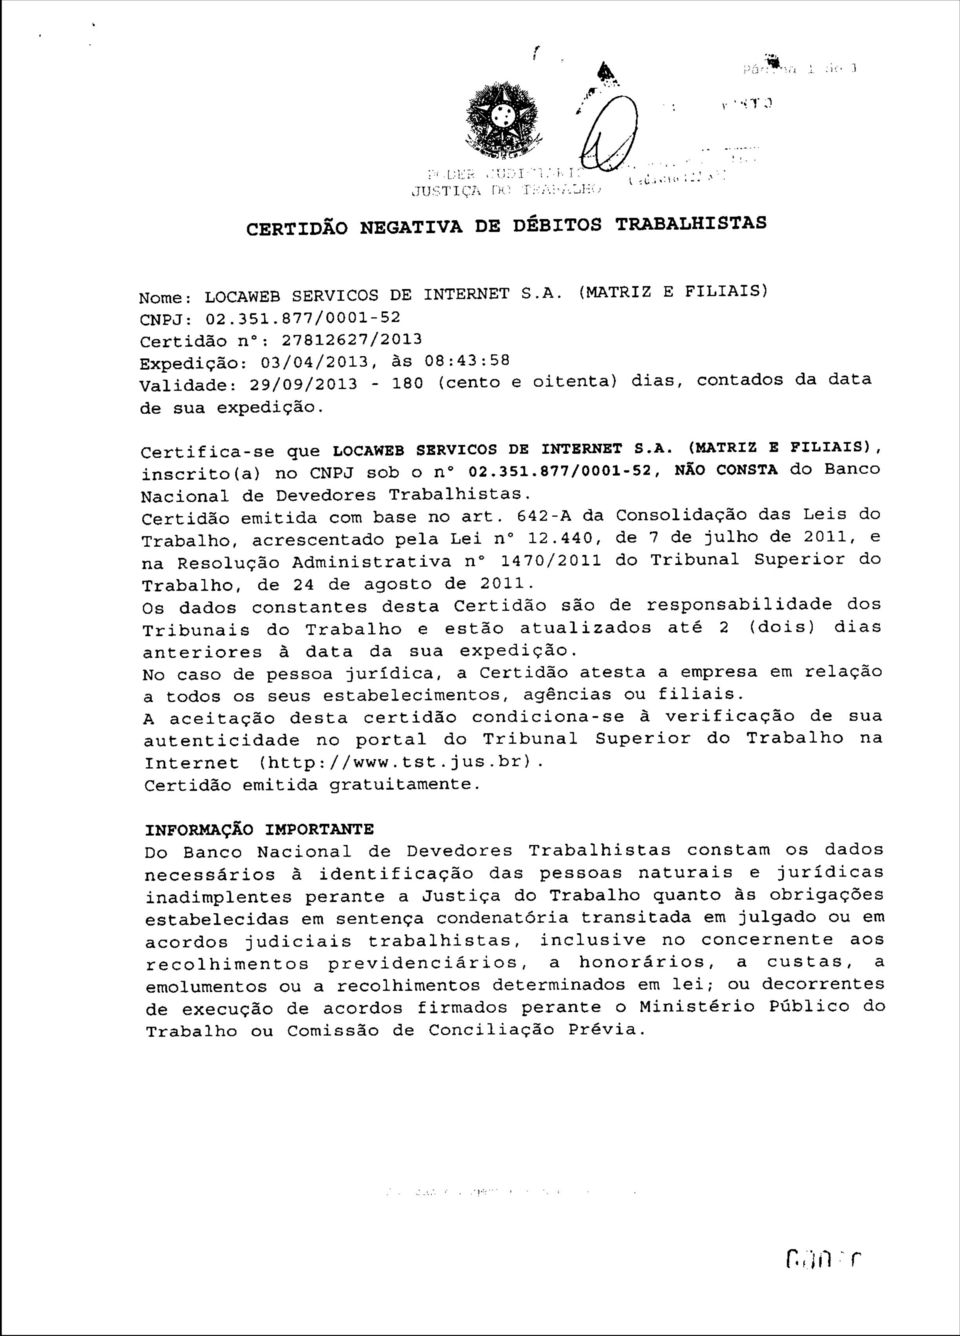 Certifica-se que LOCAWEB SERVIÇOS DE INTERNET S.A. (MATRIZ E FILIAIS), inscrito(a) no CNPJ sob o n 02.351.